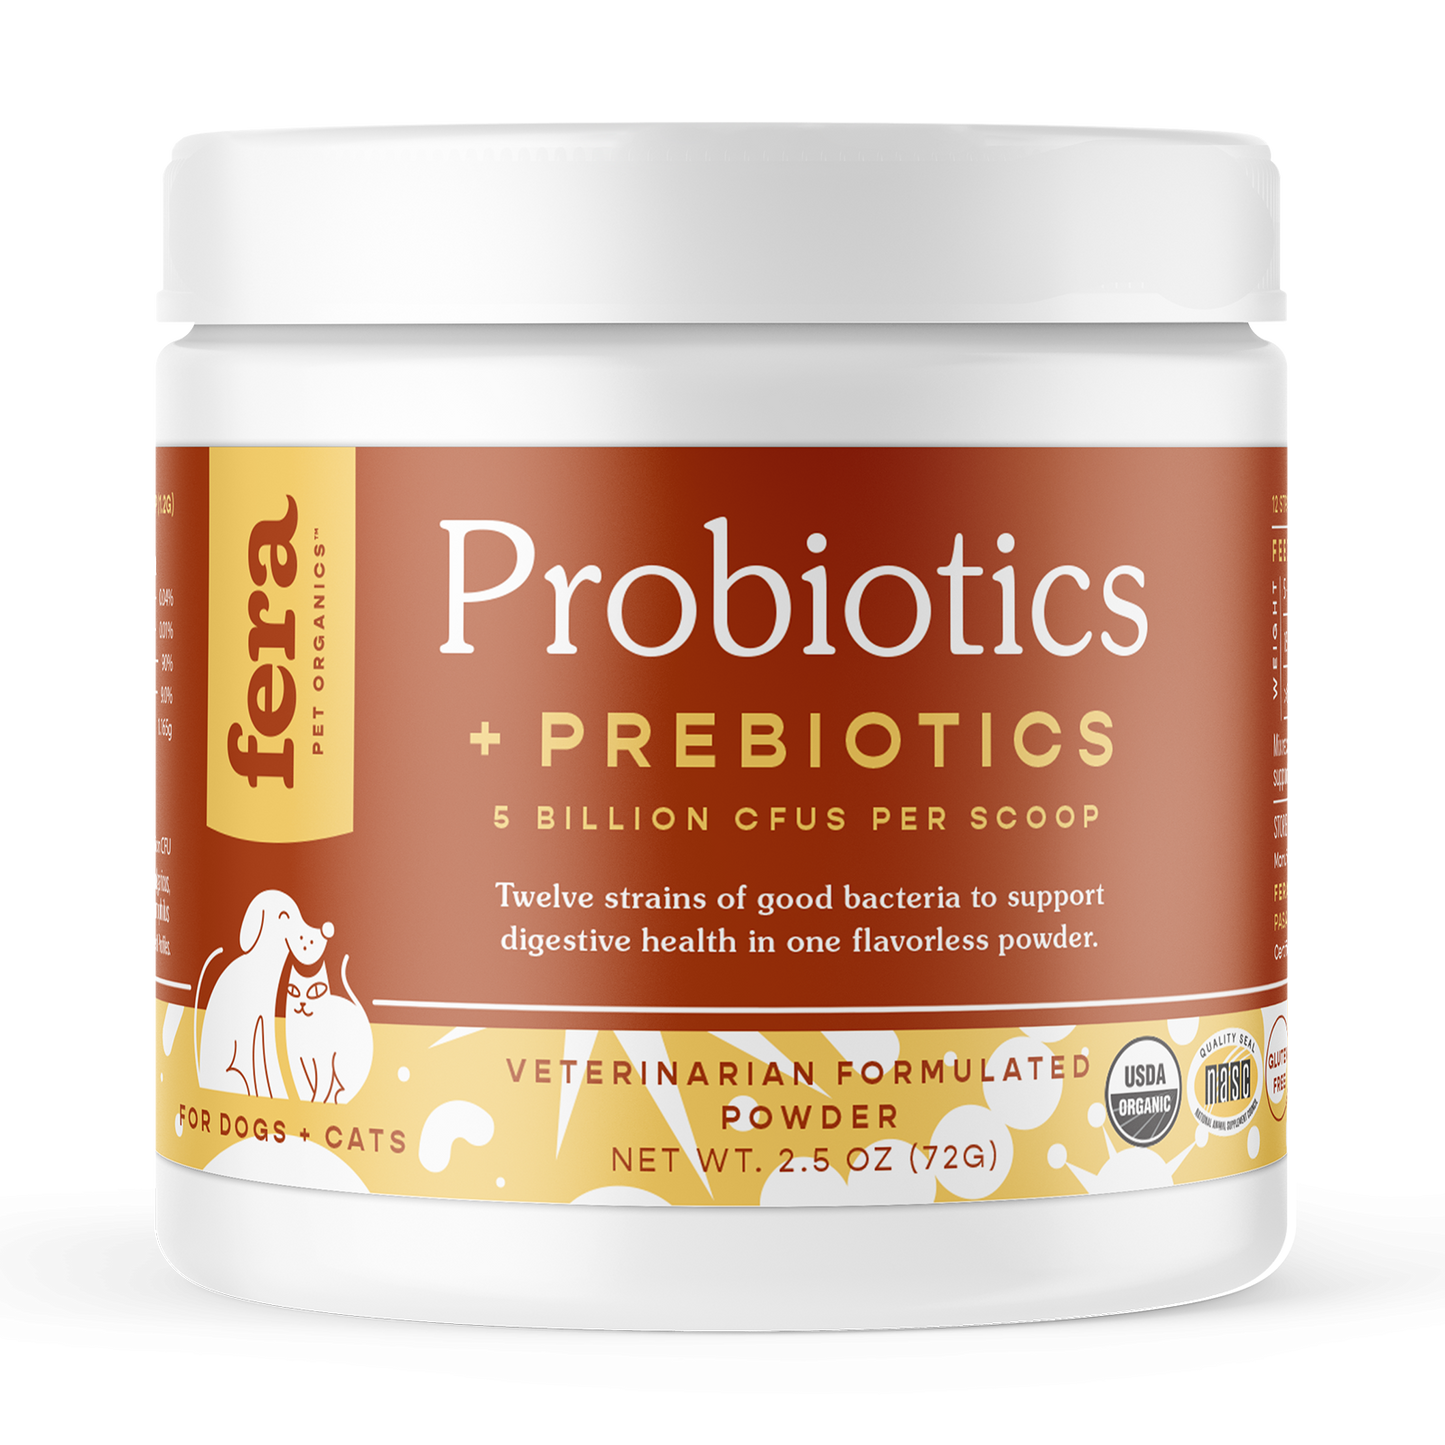 Fera Pet Organics Probiotics Powder for Dogs & Cats